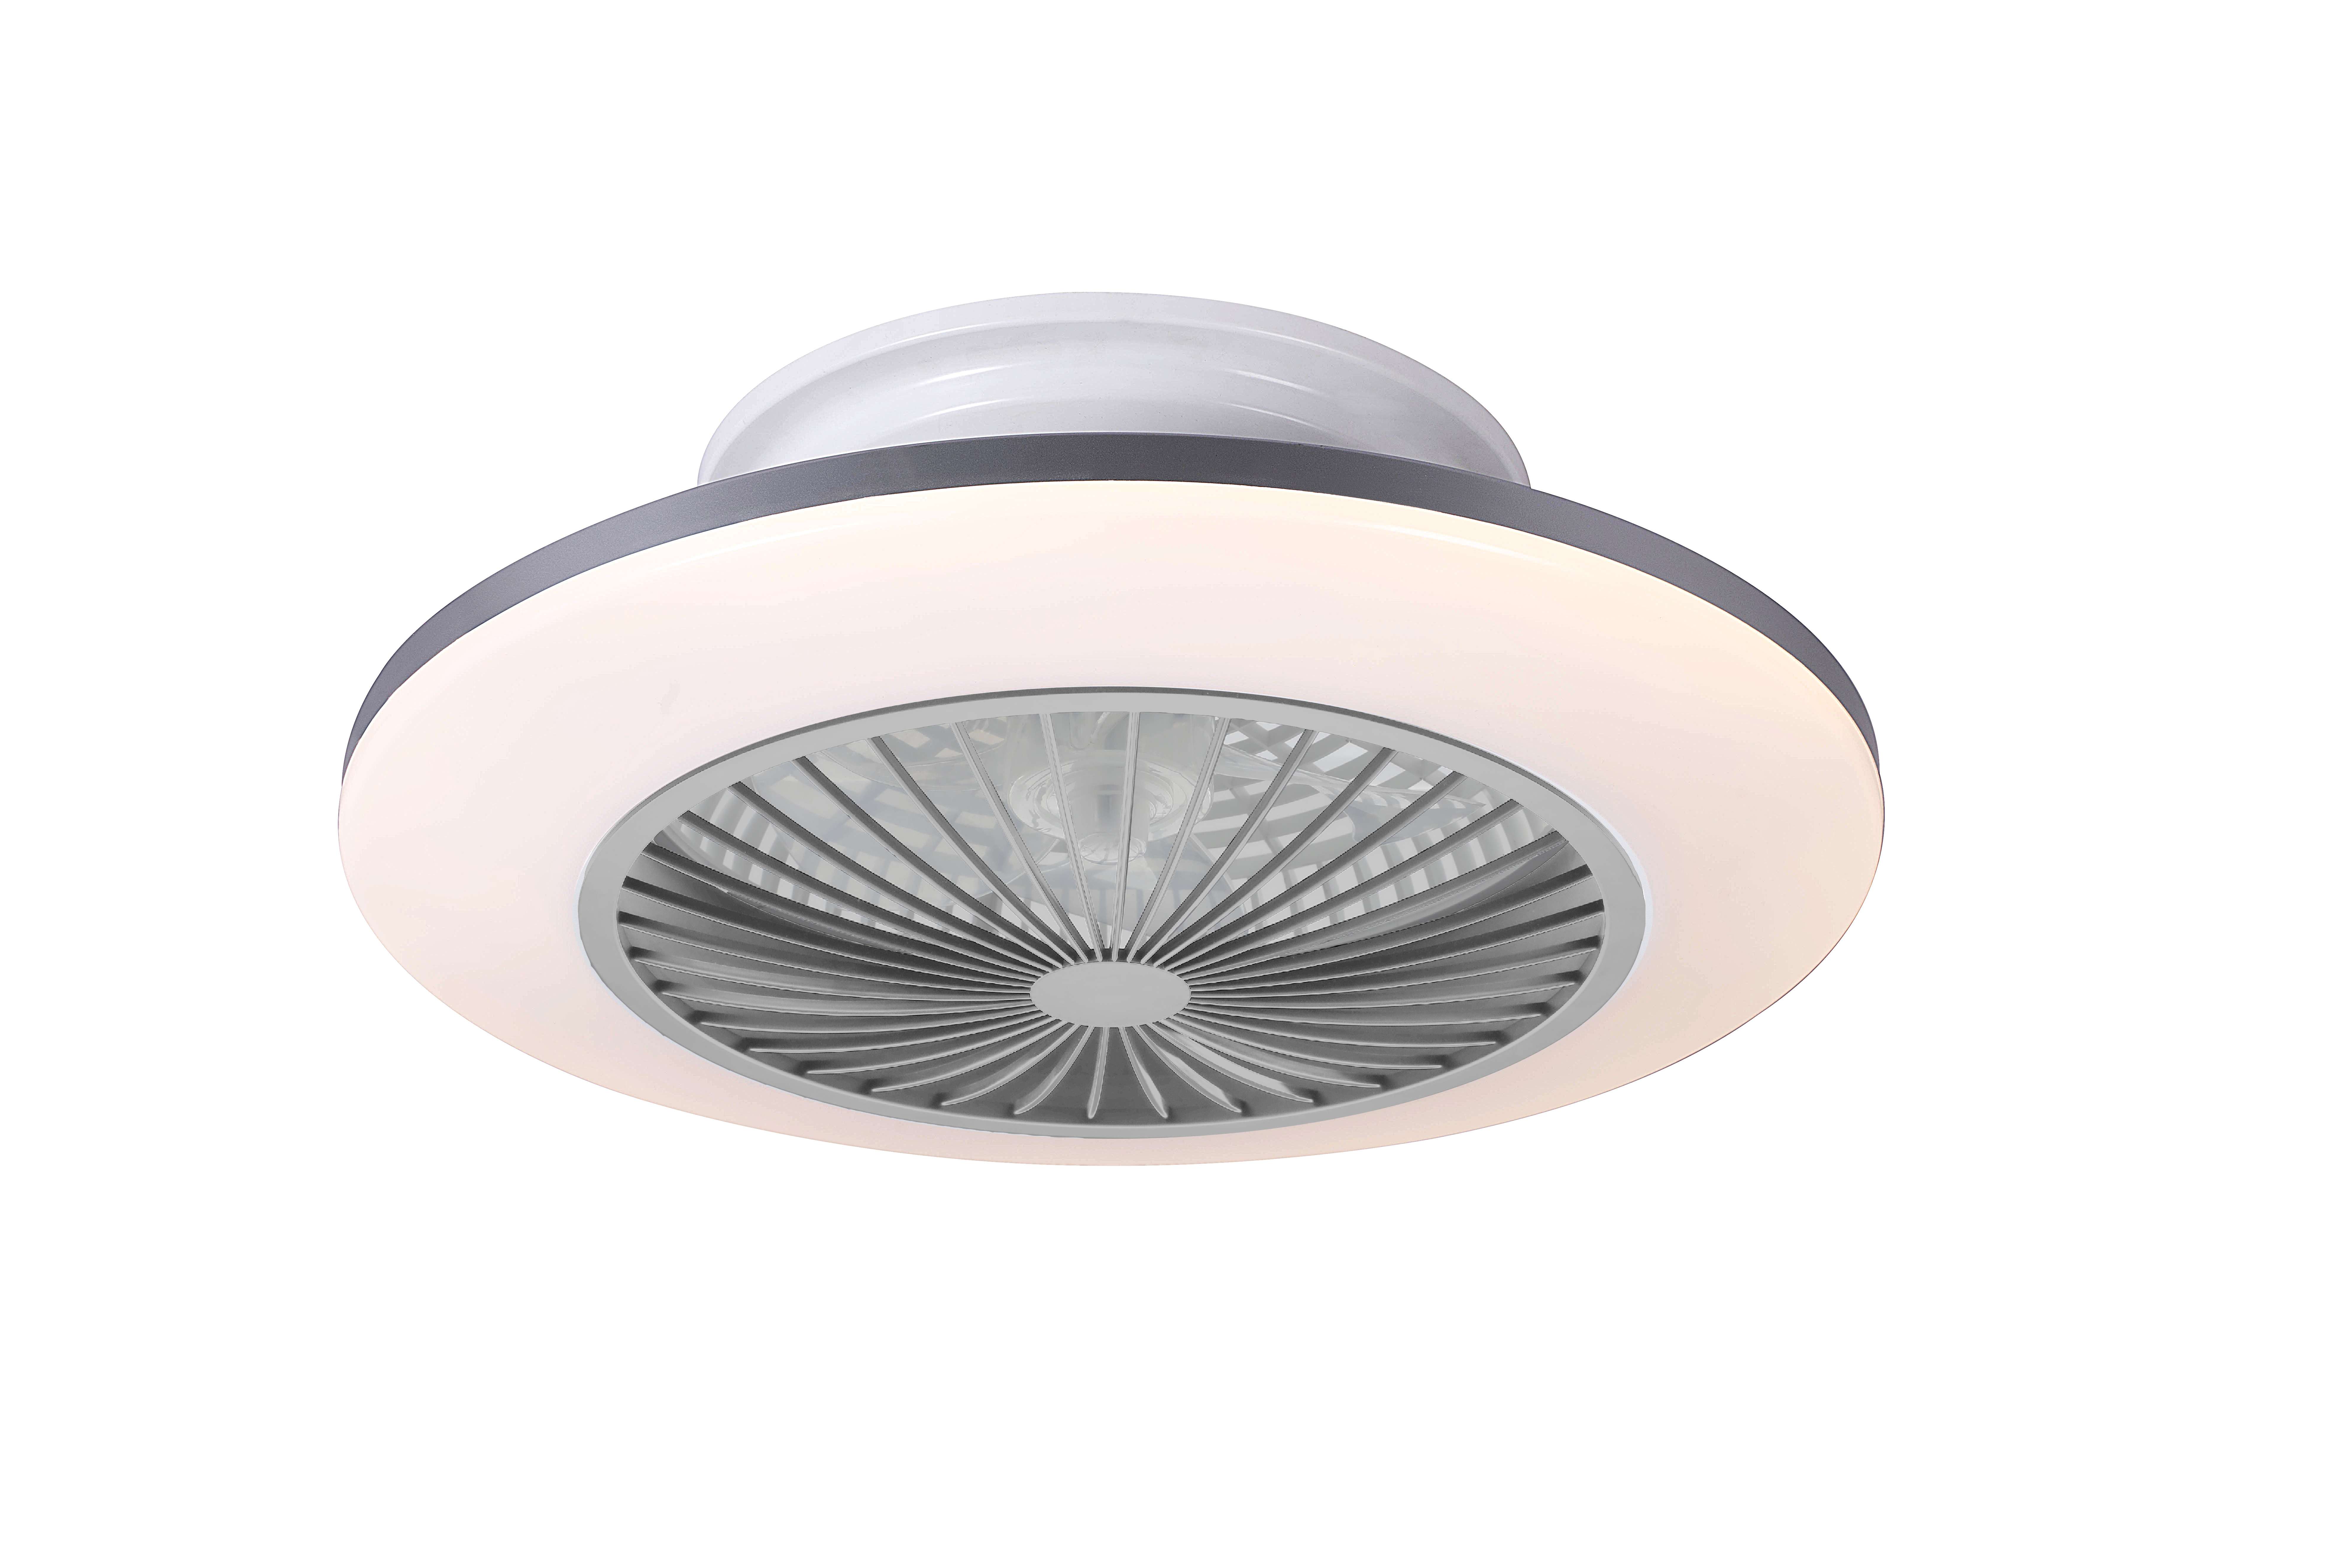 LED ceiling fan fan lamp CE certified